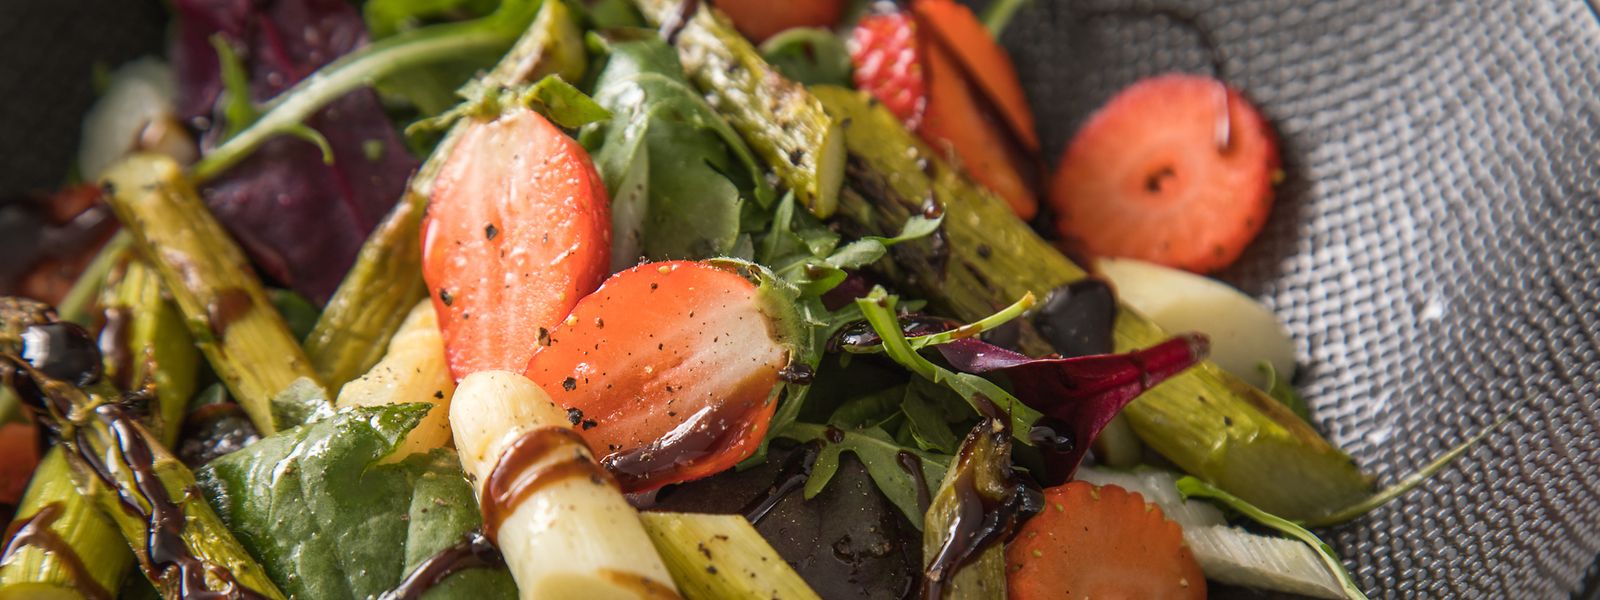 Ein gut gemachter Salat ist lecker, wasserreich und leicht verdaulich - im Sommer die perfekte Kombination für eine kleine Mahlzeit zwischendurch.